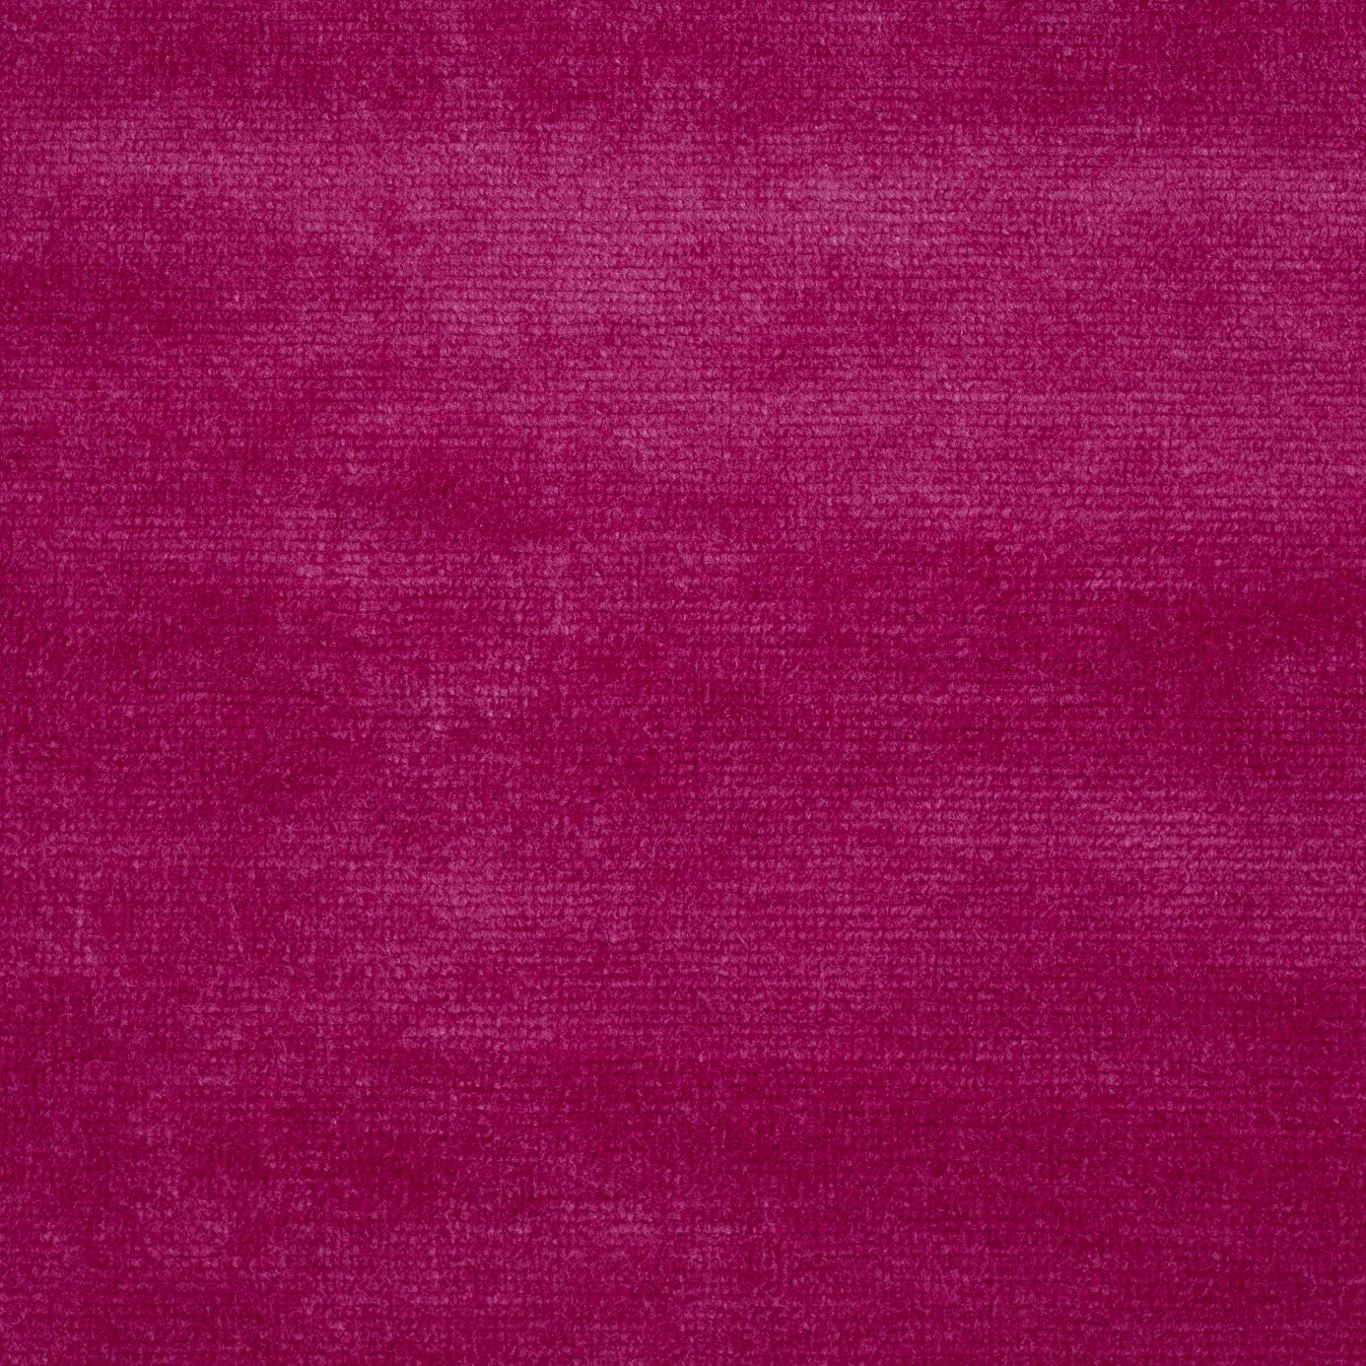 Boho Velvets Fabric by Sanderson - DVLV235271 - Raspberry